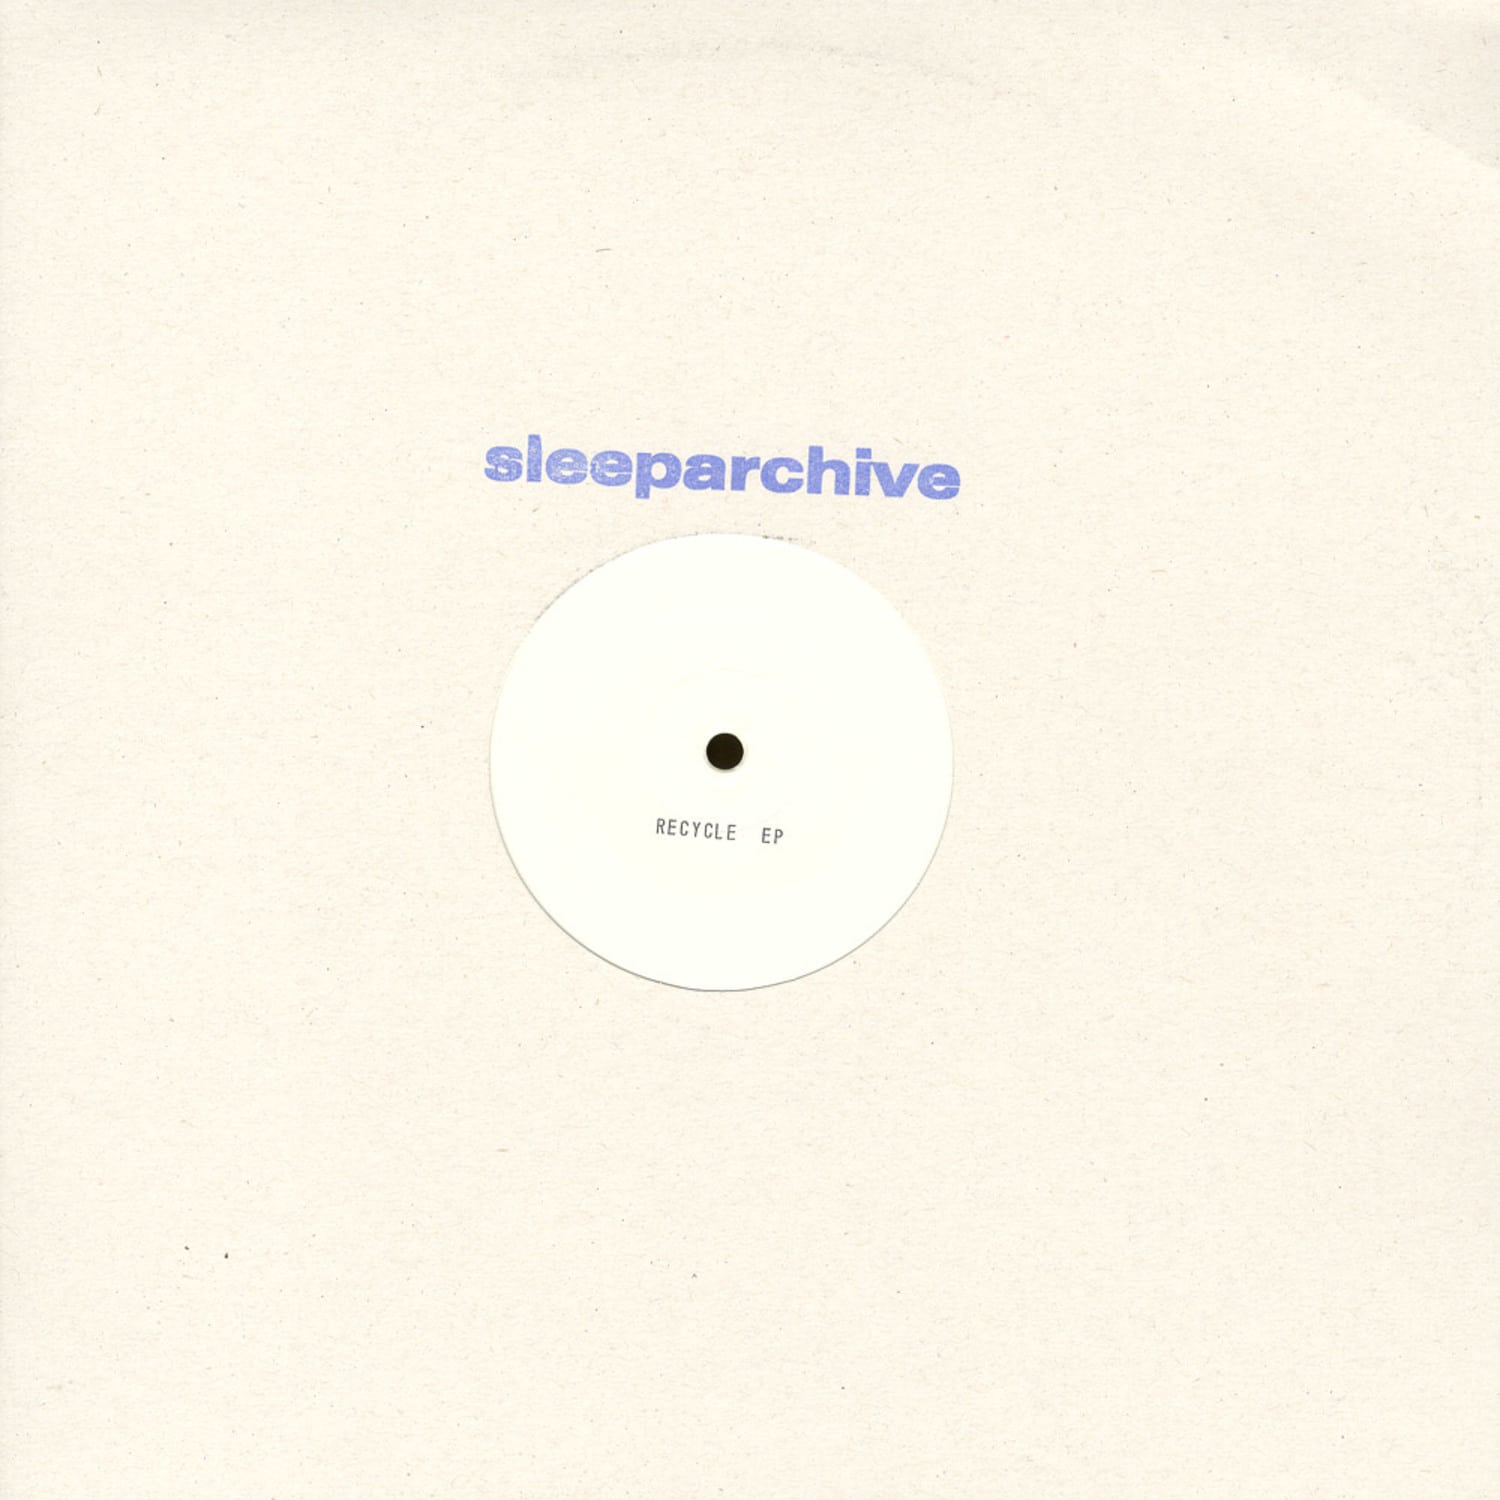 Sleeparchive - RECYCLE EP